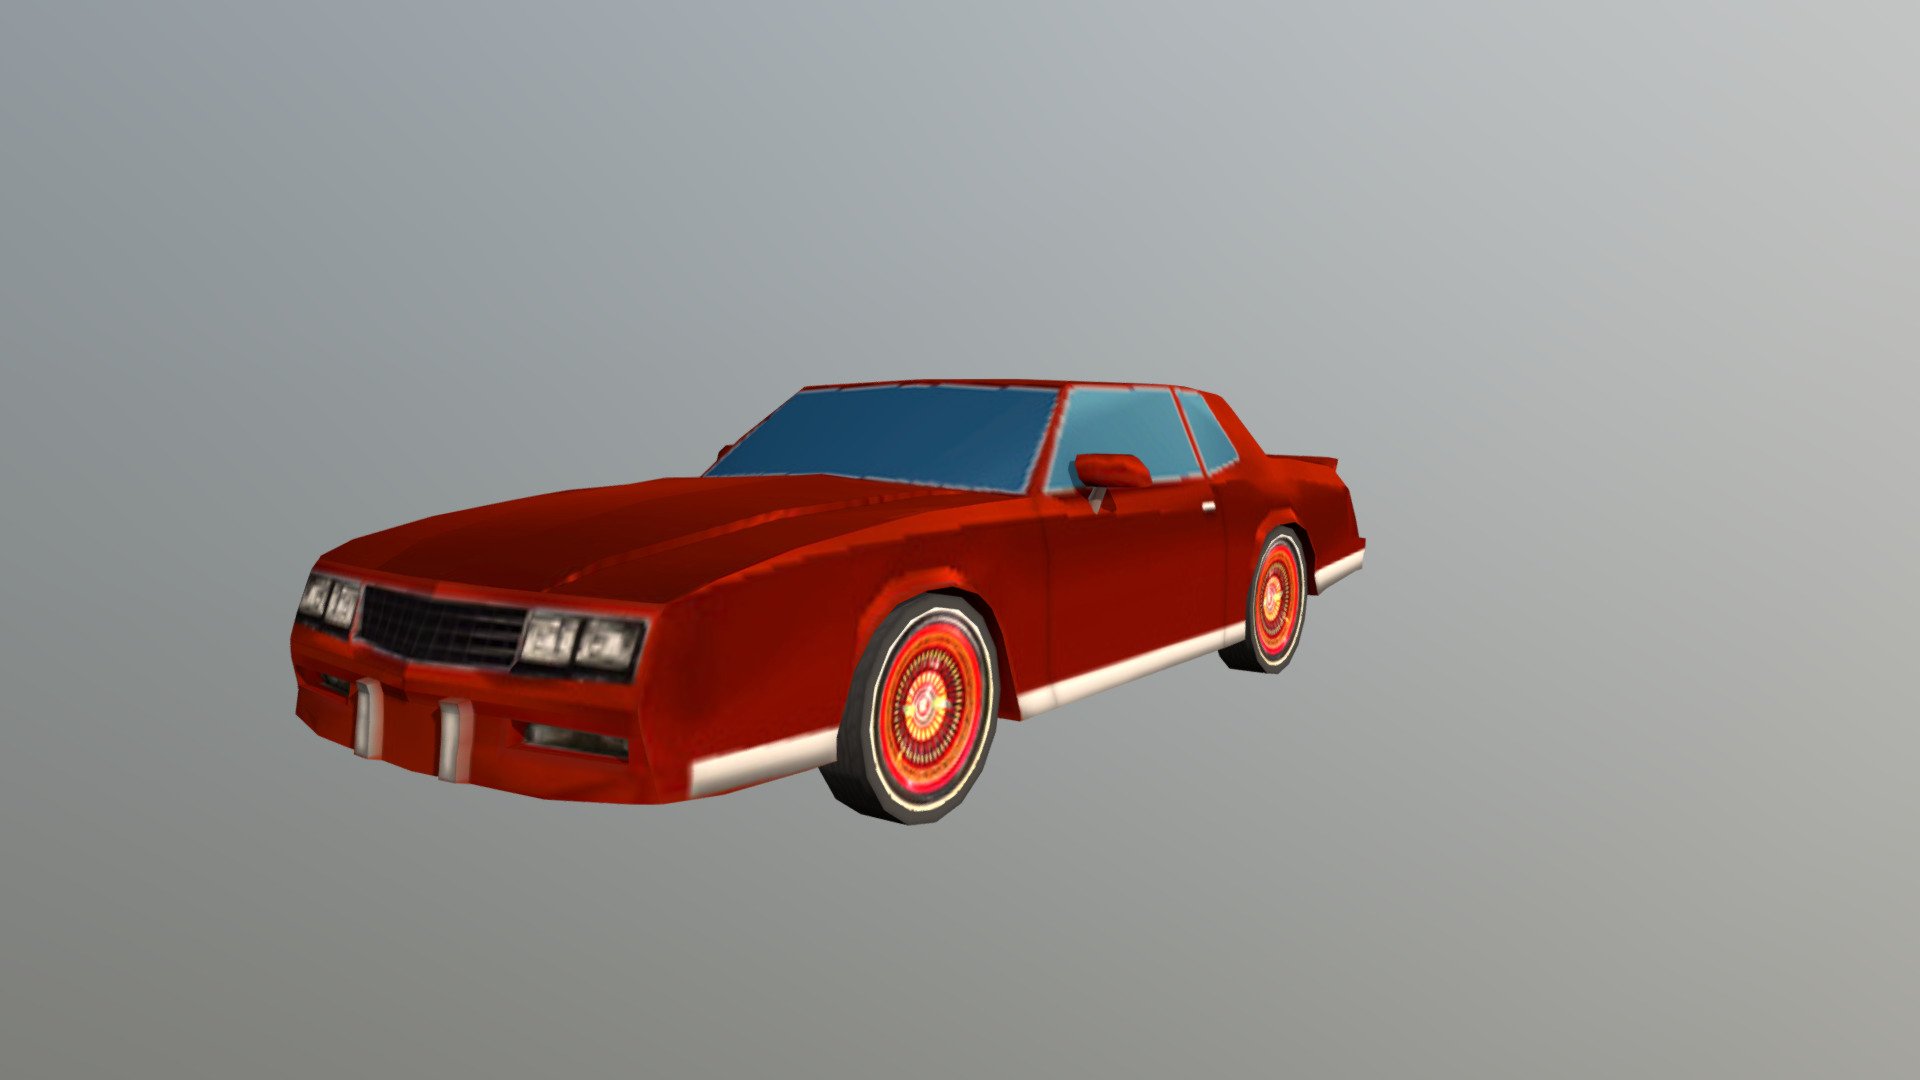 Chevrolet Monte Carlo 82 - Jesse Pinkman's Car